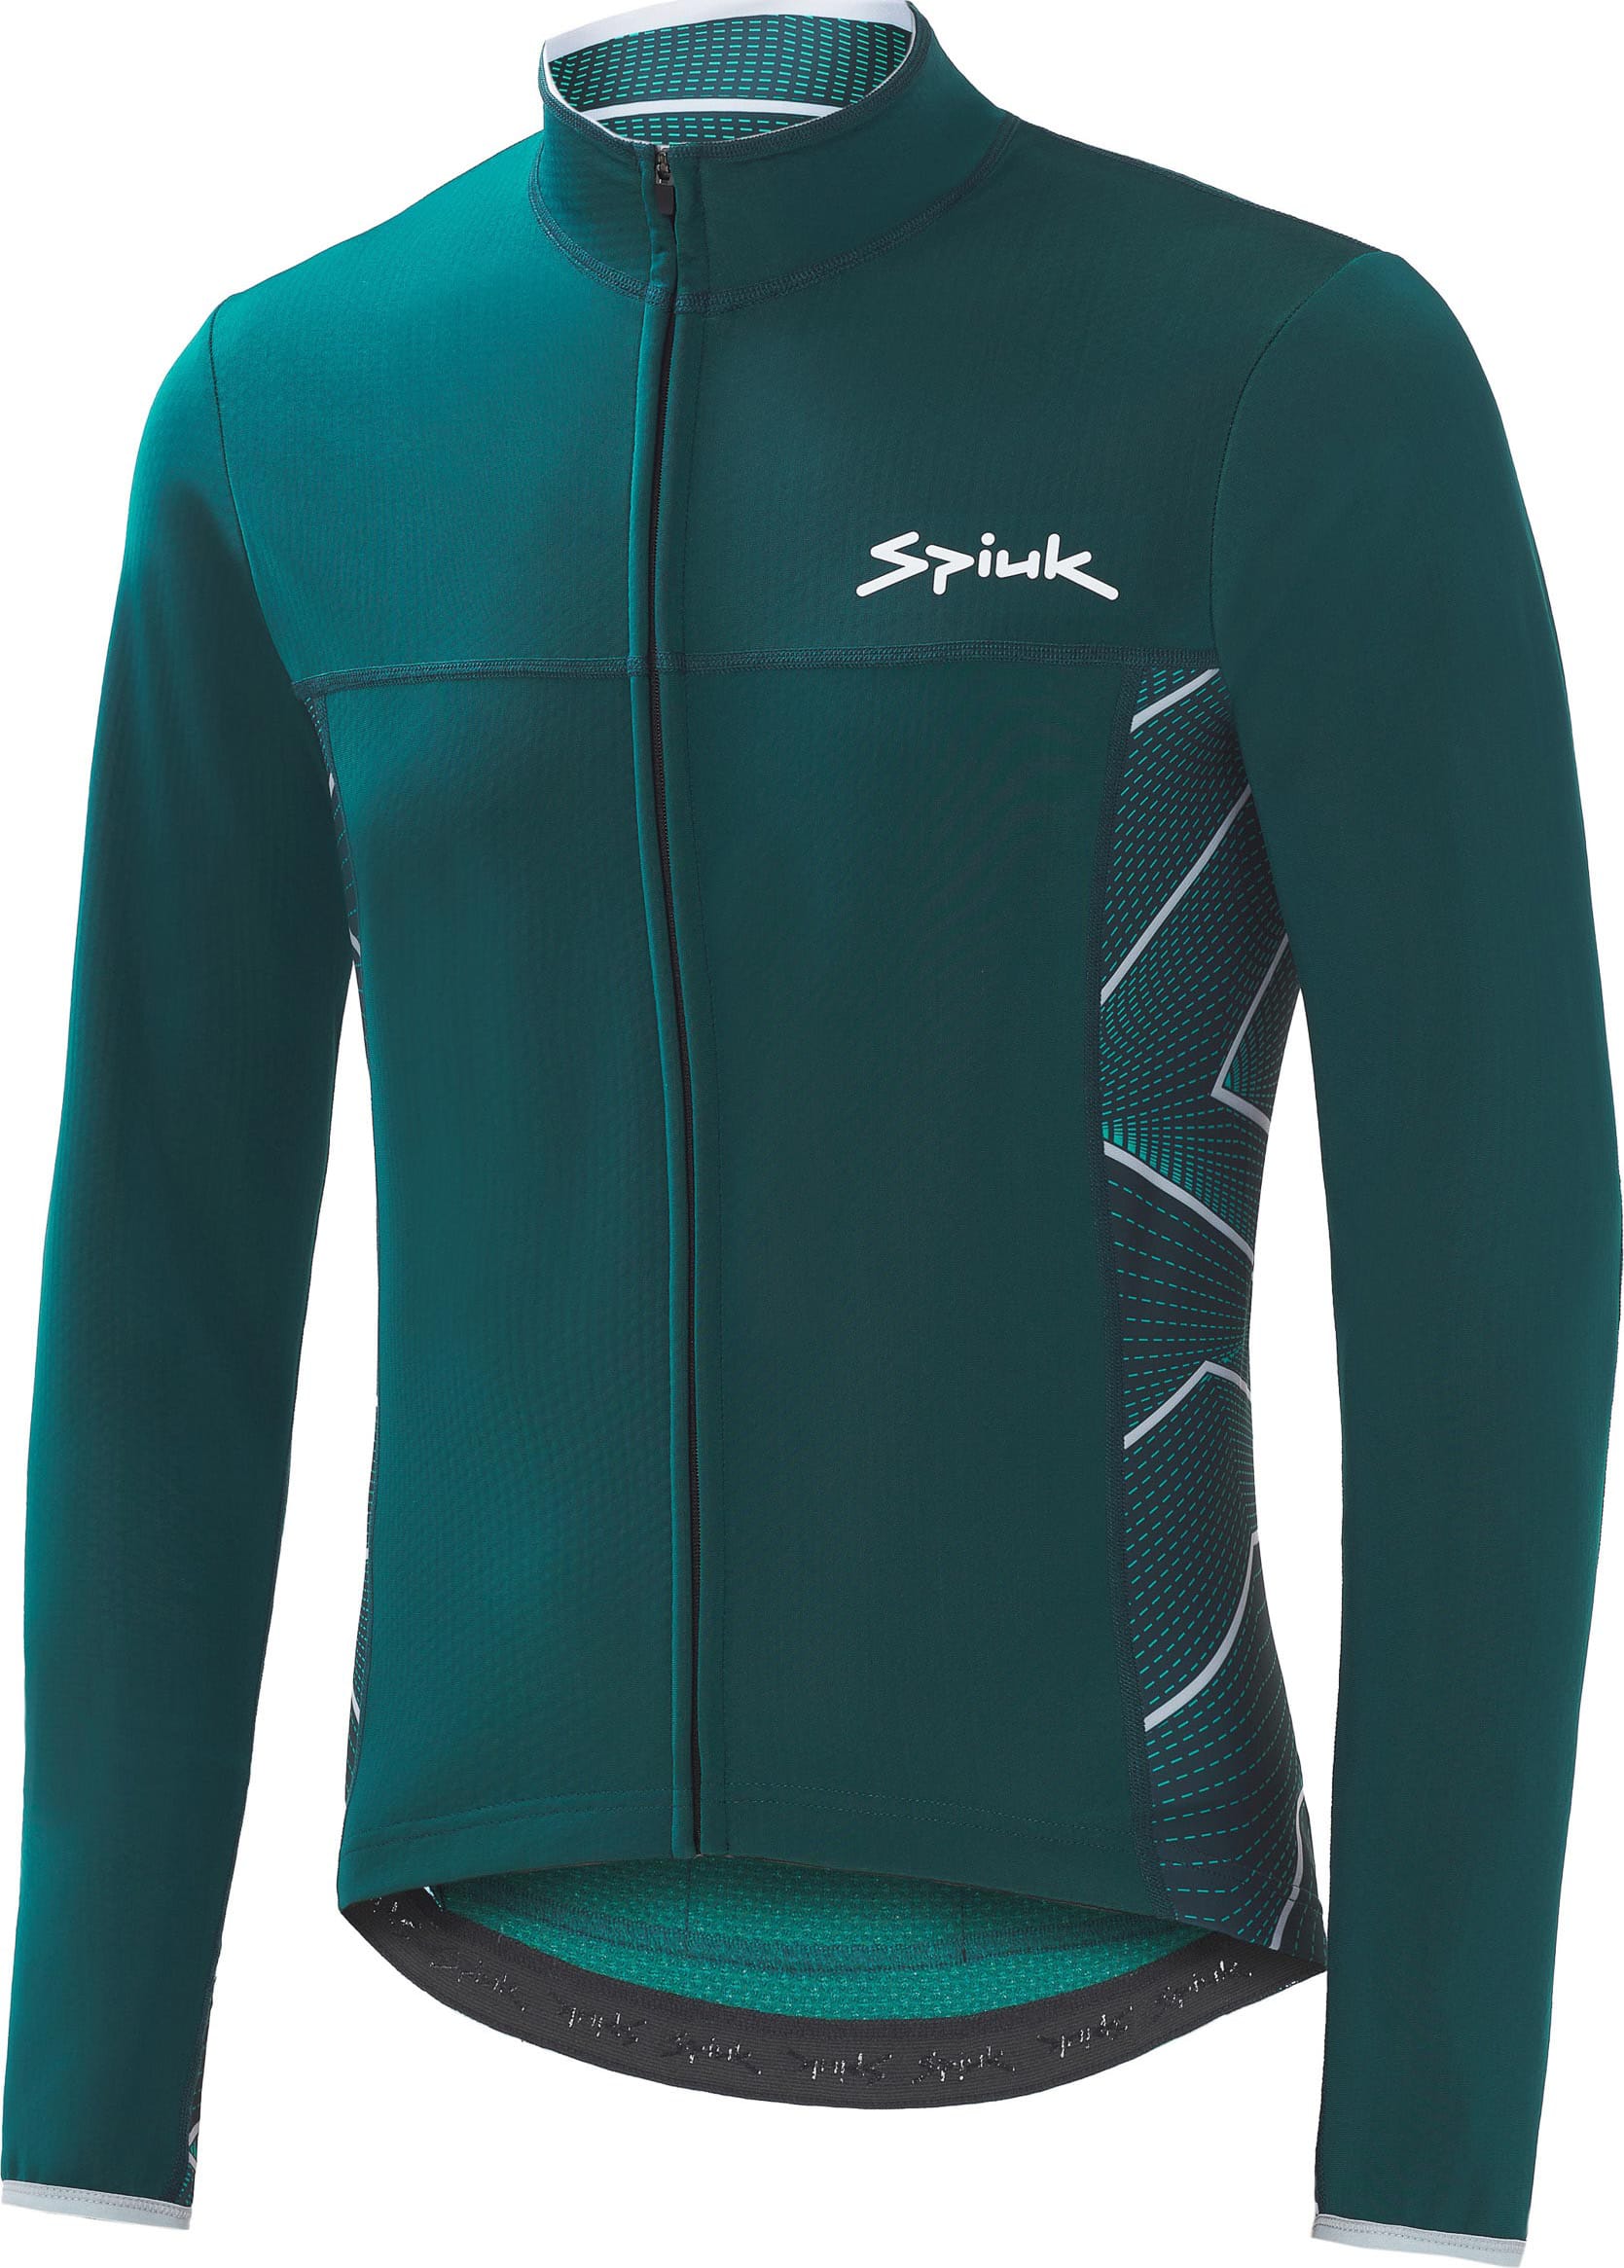 Куртка Spiuk Boreas Light Membrane мужская зеленая XL фото 